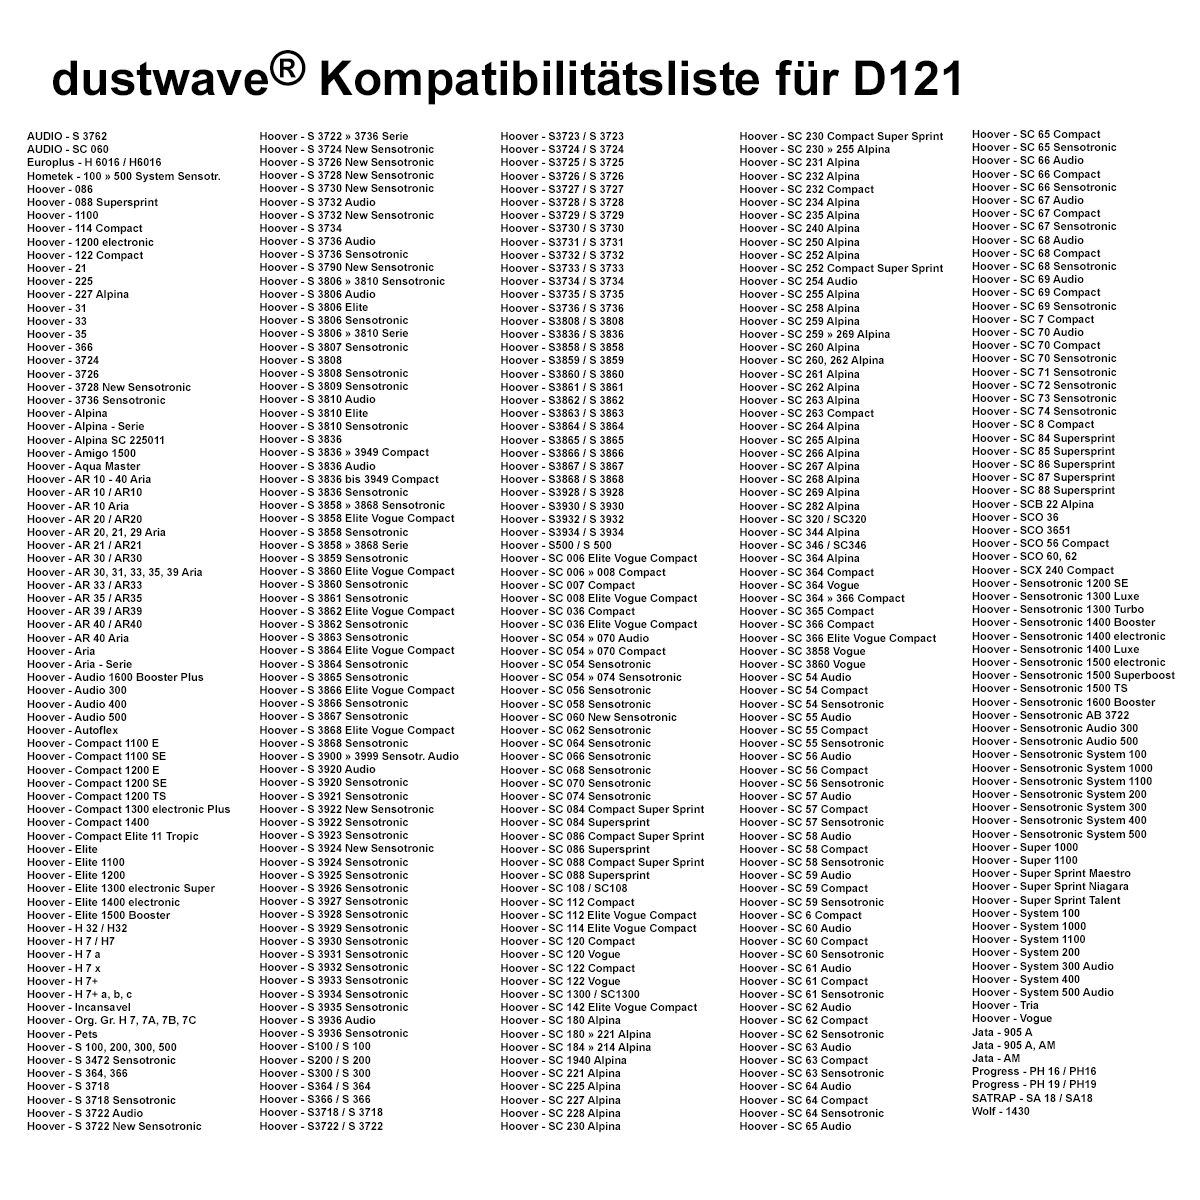 Dustwave® 10 Staubsaugerbeutel für Hoover Sensotronic 1400 Luxe / electronic - hocheffizient, mehrlagiges Mikrovlies mit Hygieneverschluss - Made in Germany